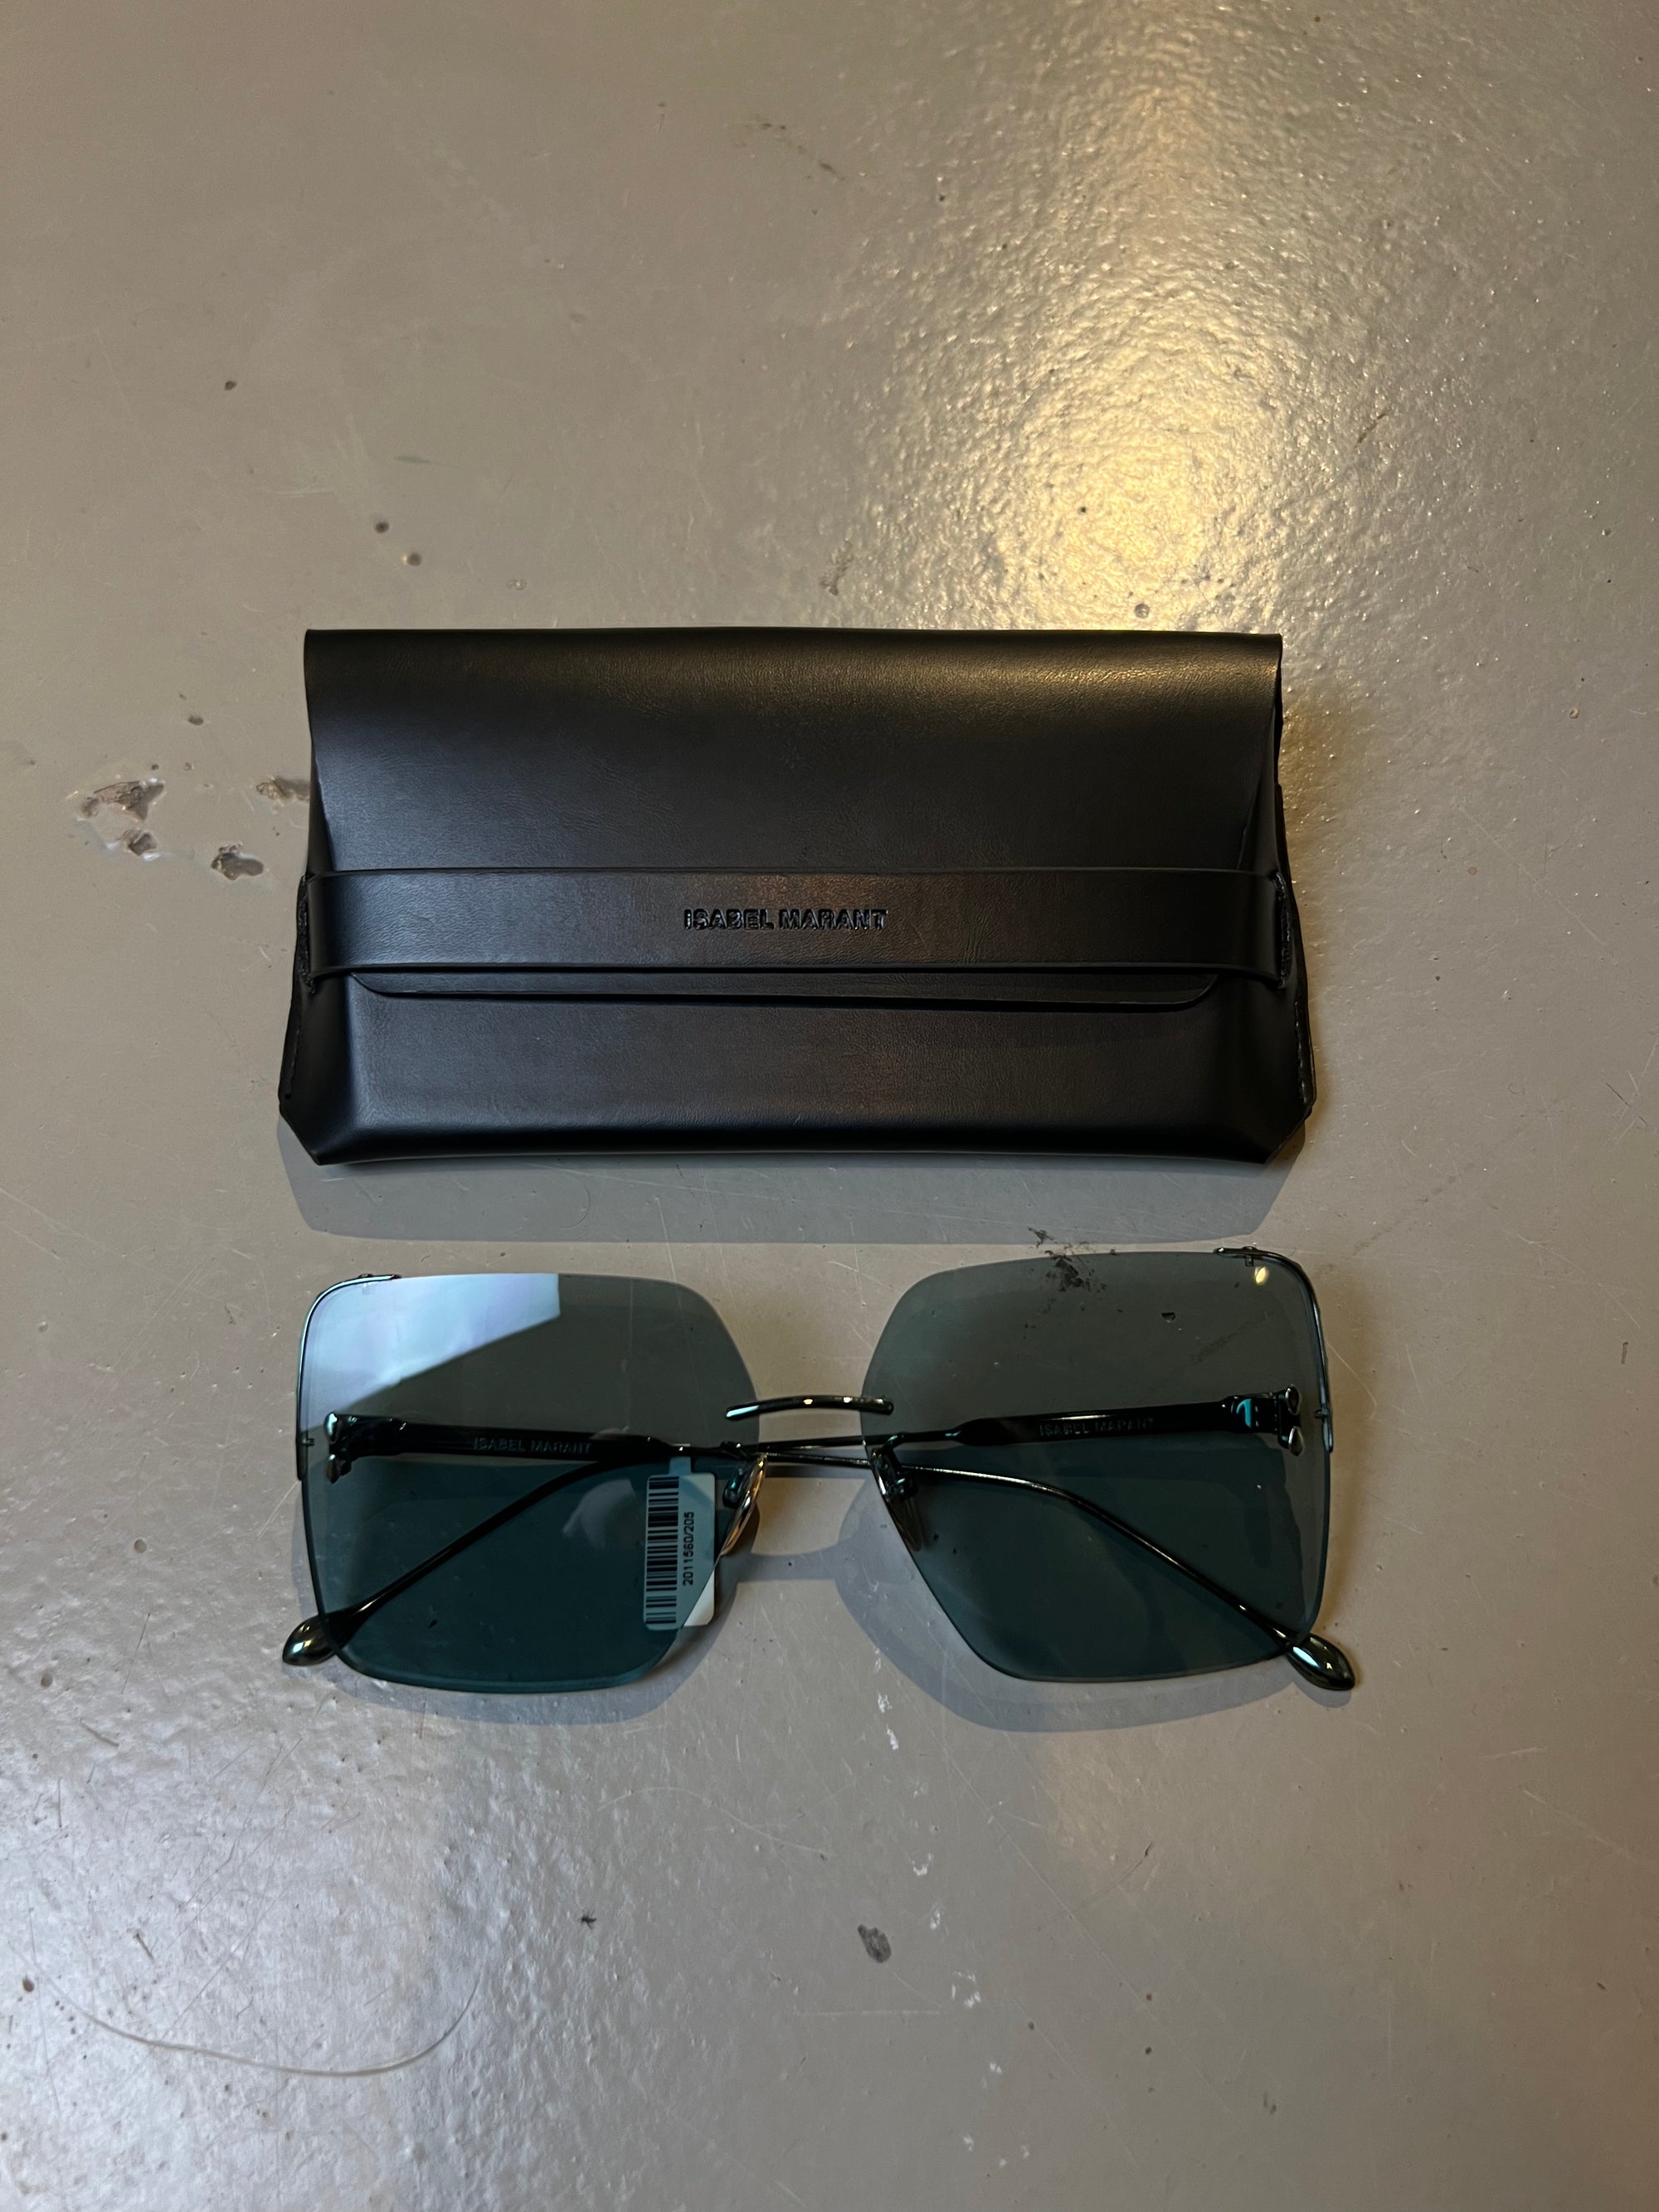 Produktbild der Isabel Marant Dark Green Sunglasses von vorne mit Case vor grauem Hintergrund.